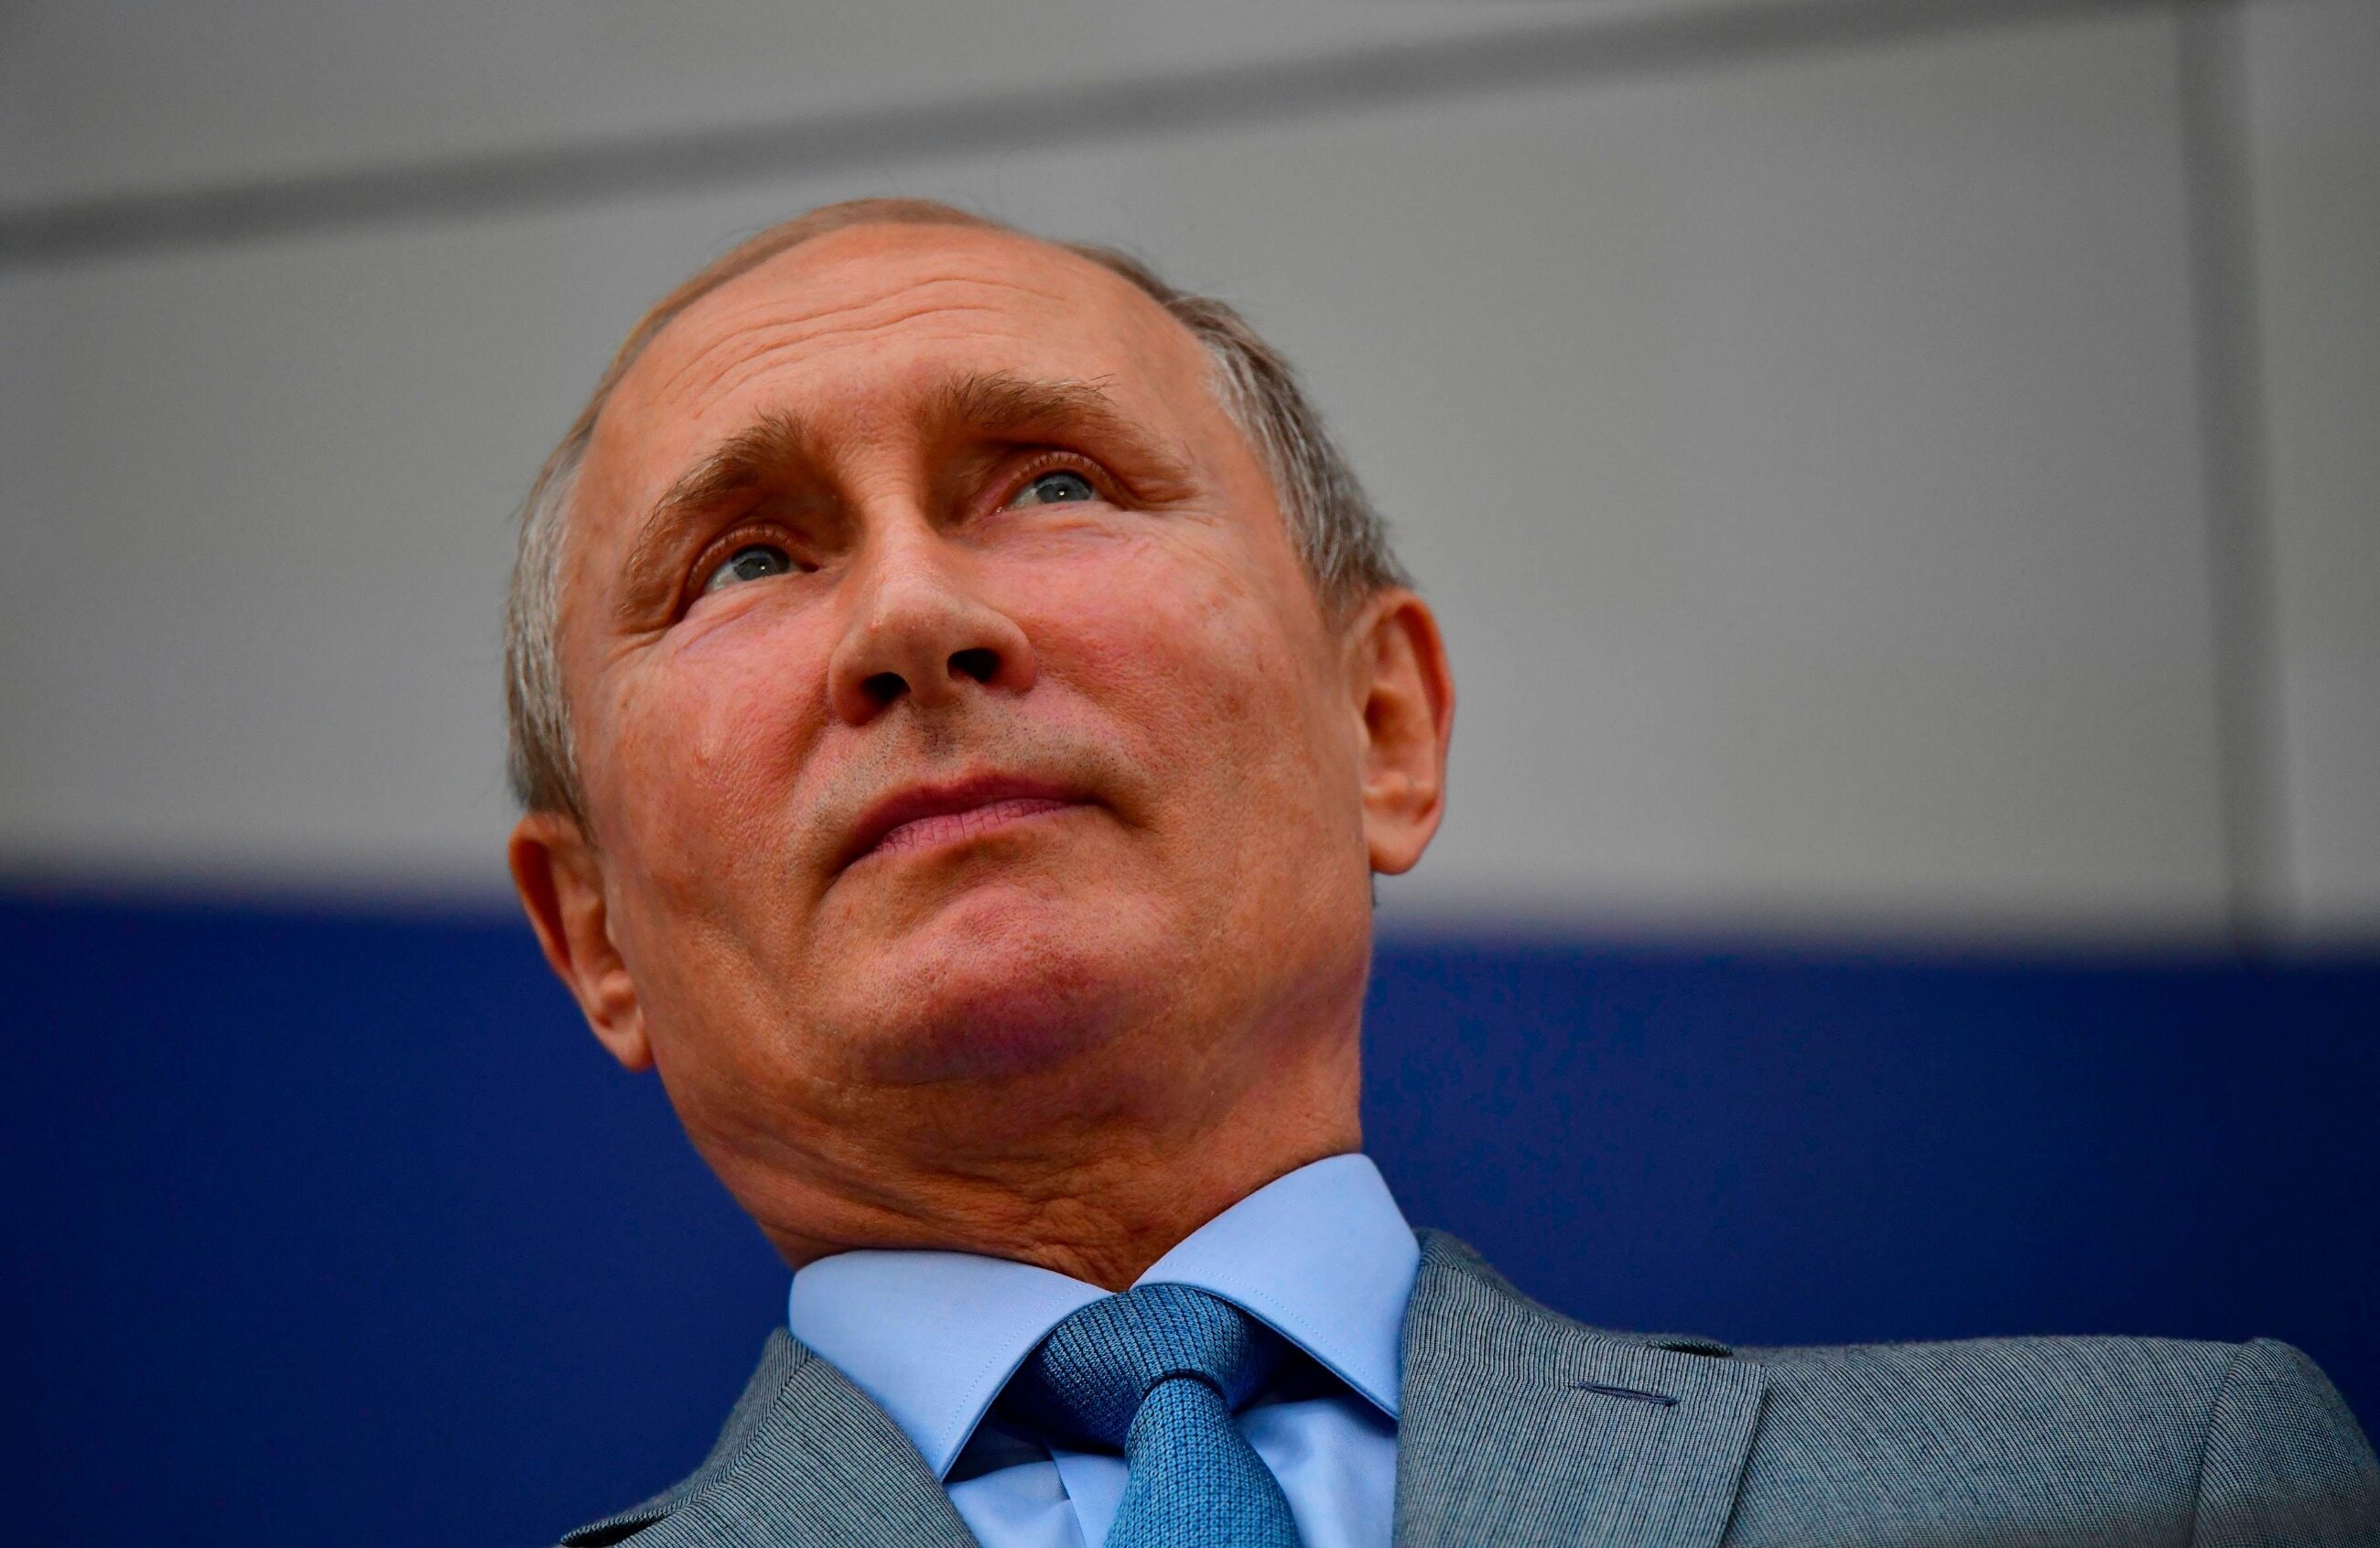 Władimir Putin udzielił wywiadu „Financial Times”, w którym mówił o liberalizmie i polityce państw zachodnich. Przed rozpoczęciem szczytu G20 w Osace, krytycznie do wypowiedzi prezydenta Rosji odniósł/a się: